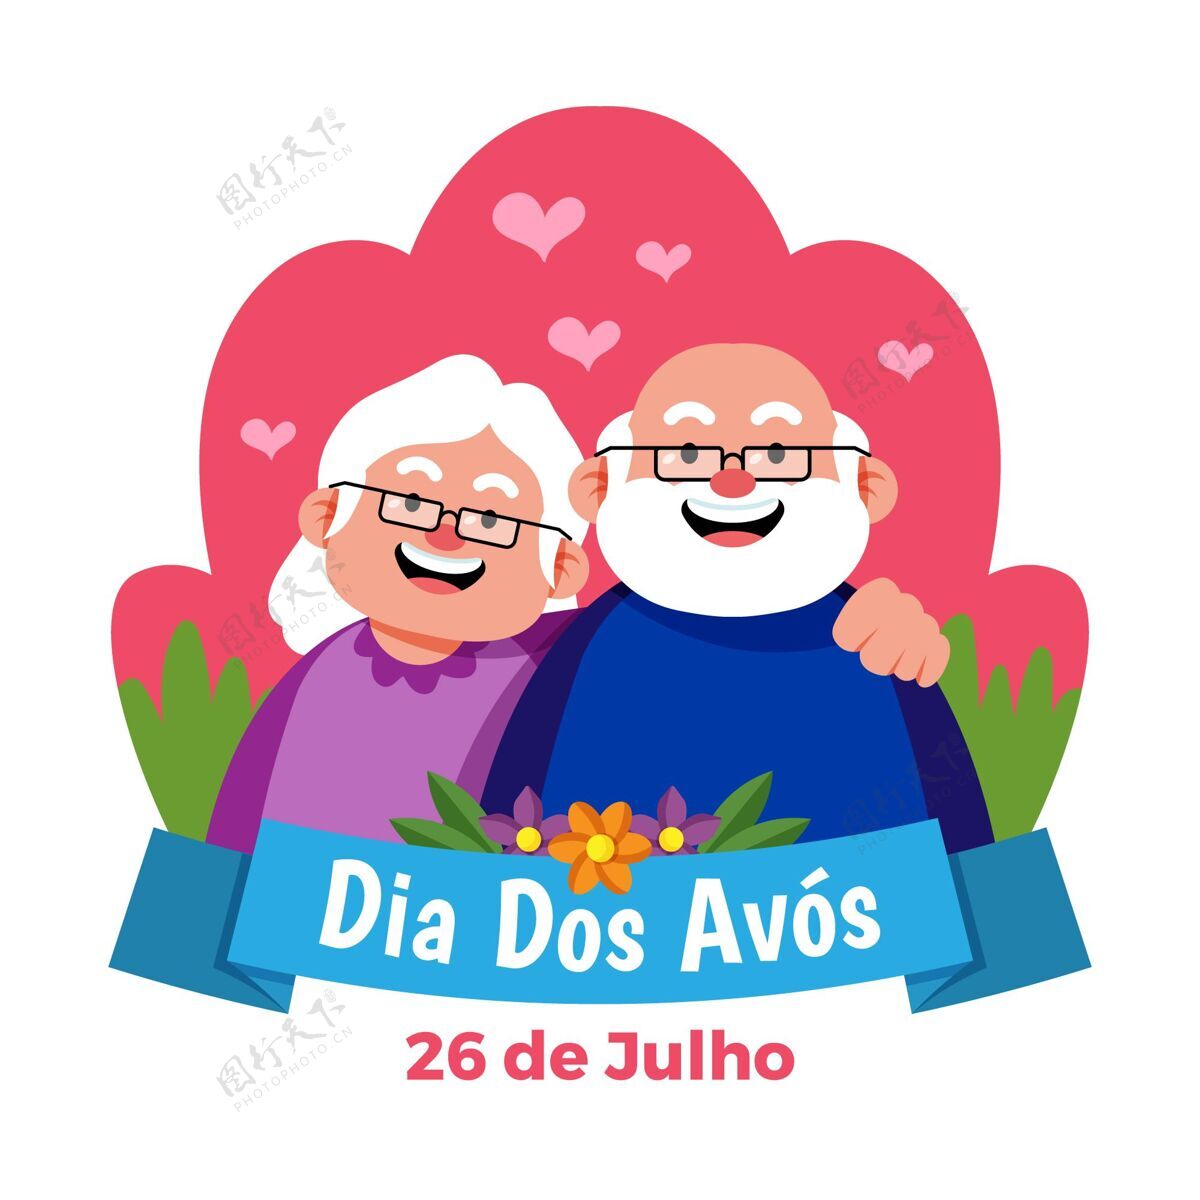 庆祝平面直径dosavos插图祖父母迪亚多斯阿沃斯祖父